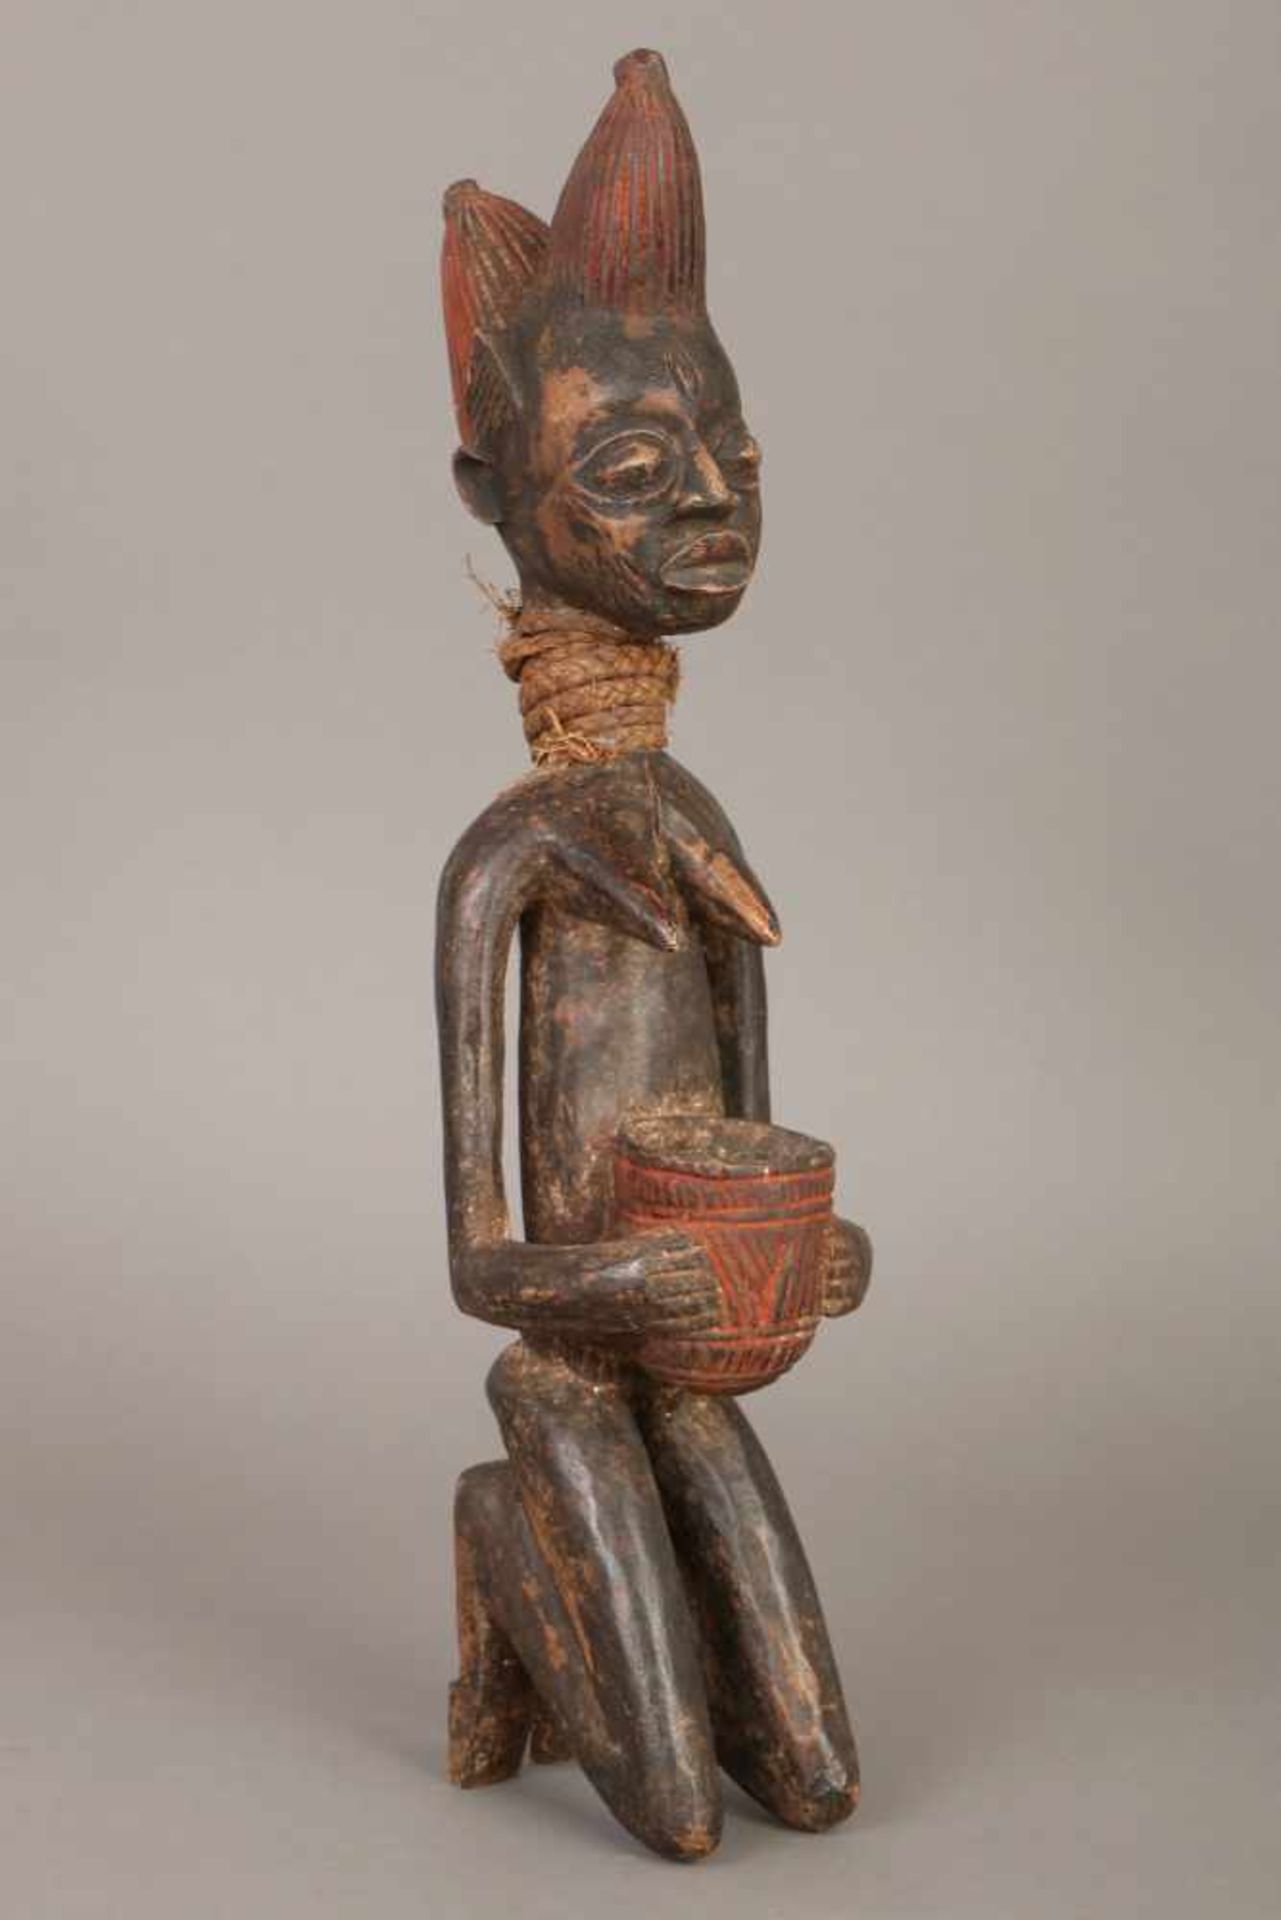 Afrikanische Ahnenfigur der Yoruba (Nigeria)Holz, dunkel patiniert, und Rafia-Geflecht, kniende